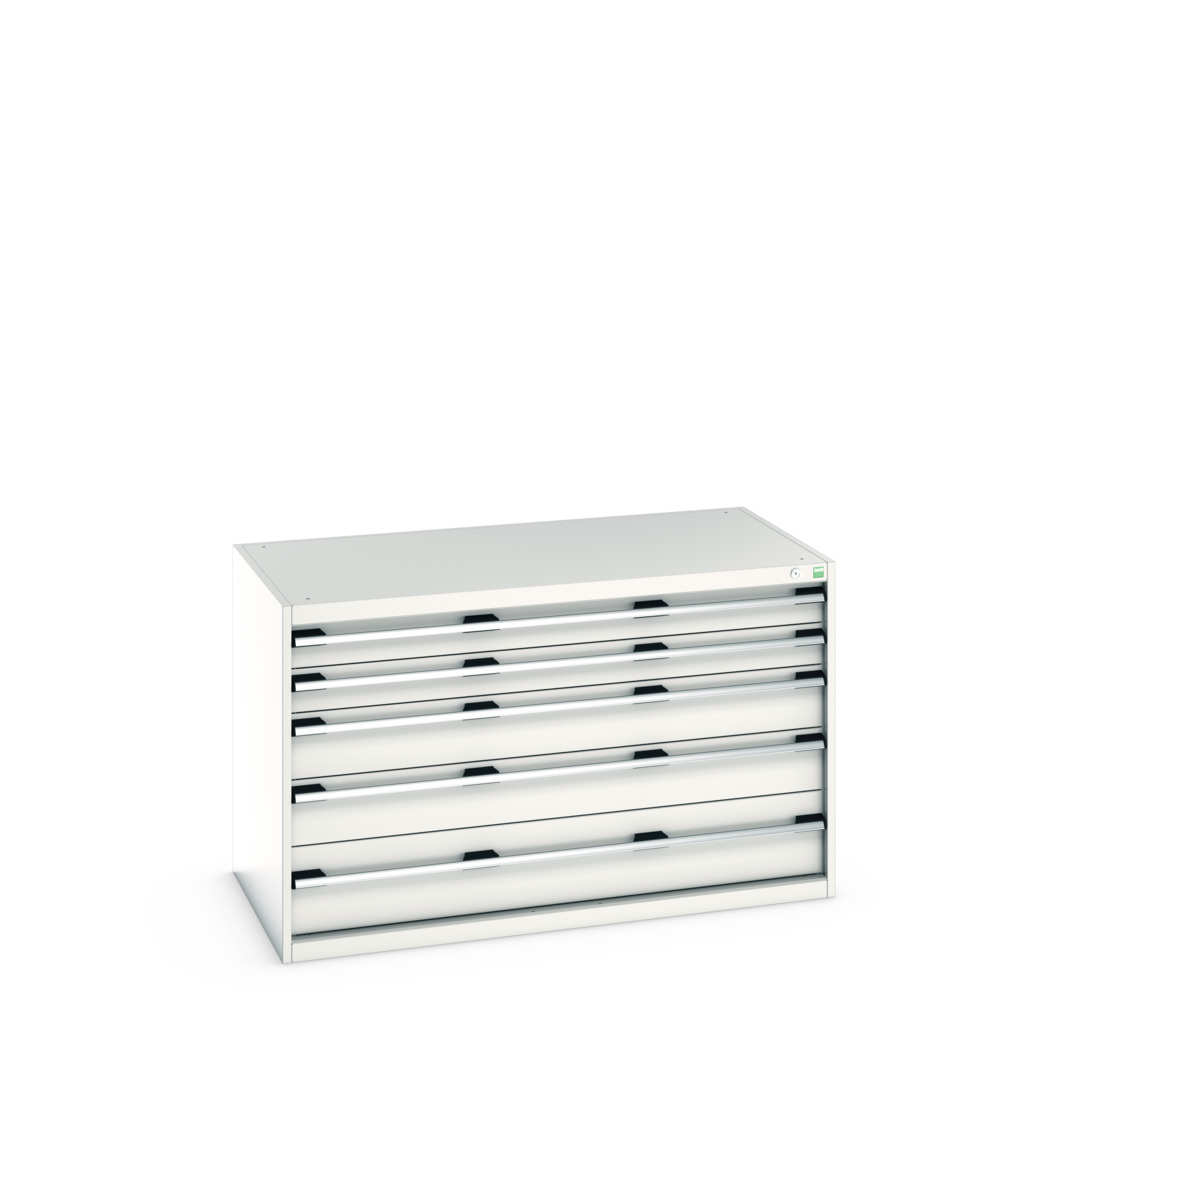 40030008.16V - cubio drawer cabinet